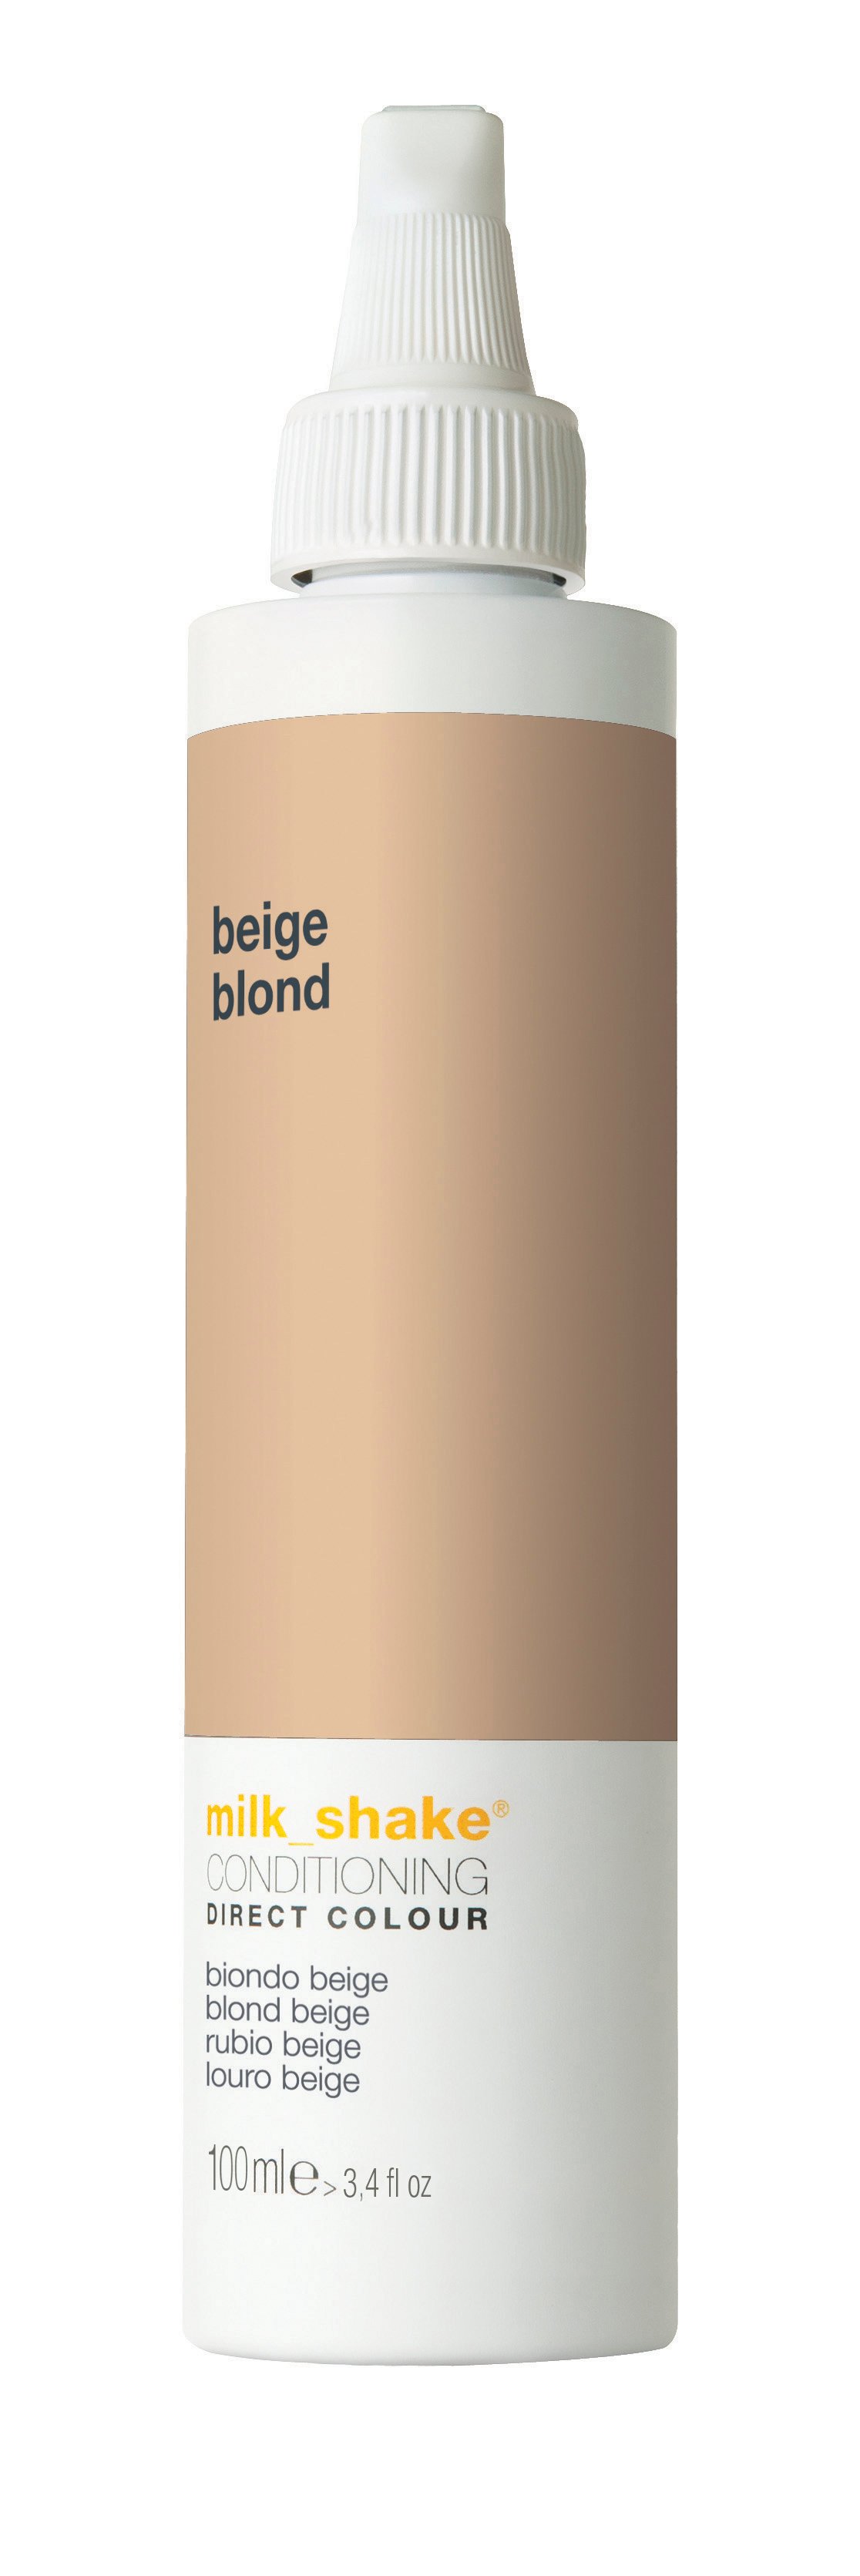 milk_shake - Direct Color 100 ml - Beige Blond - Skjønnhet